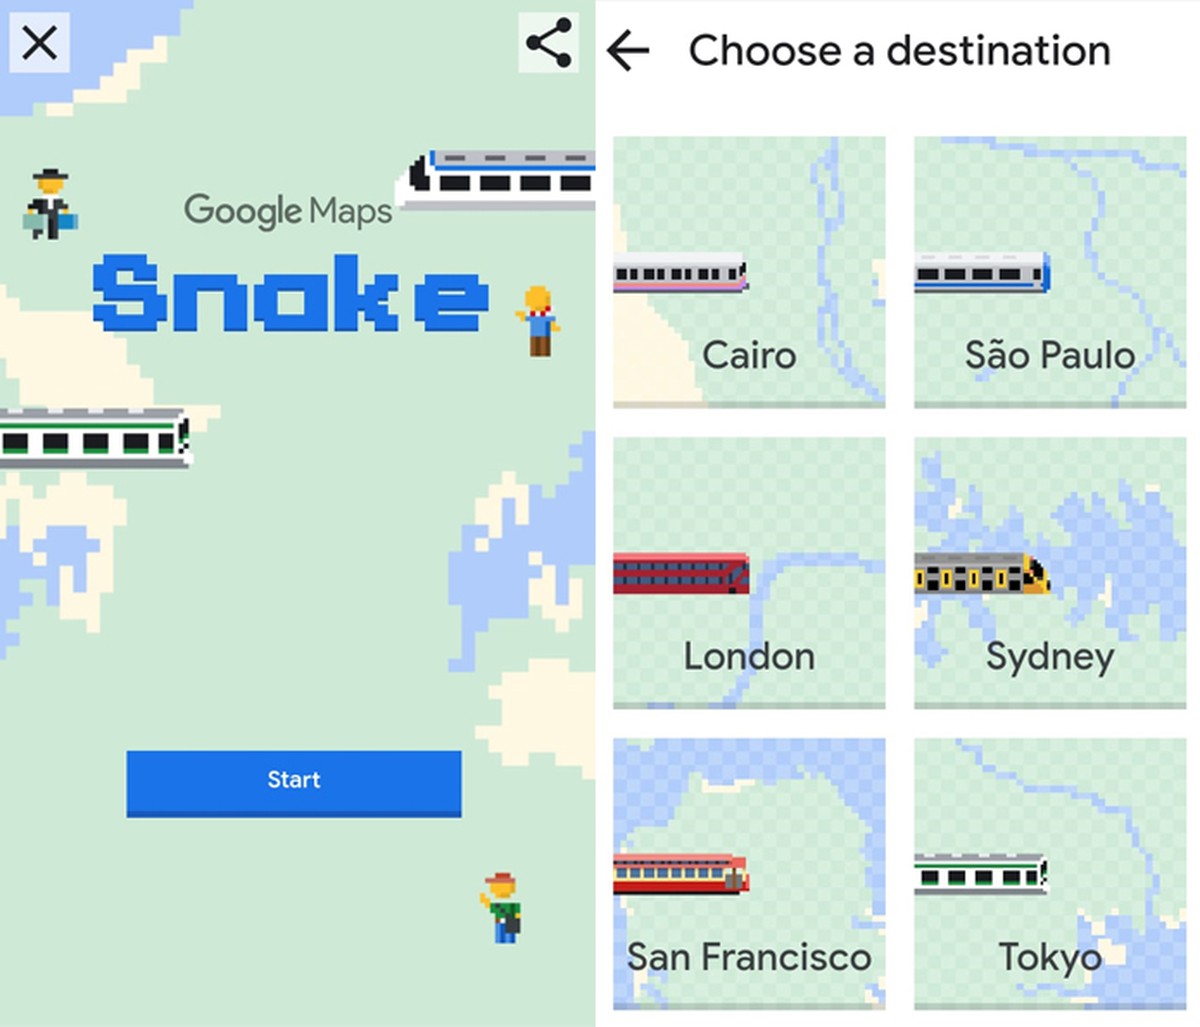 Jogo Snake – Apps on Google Play